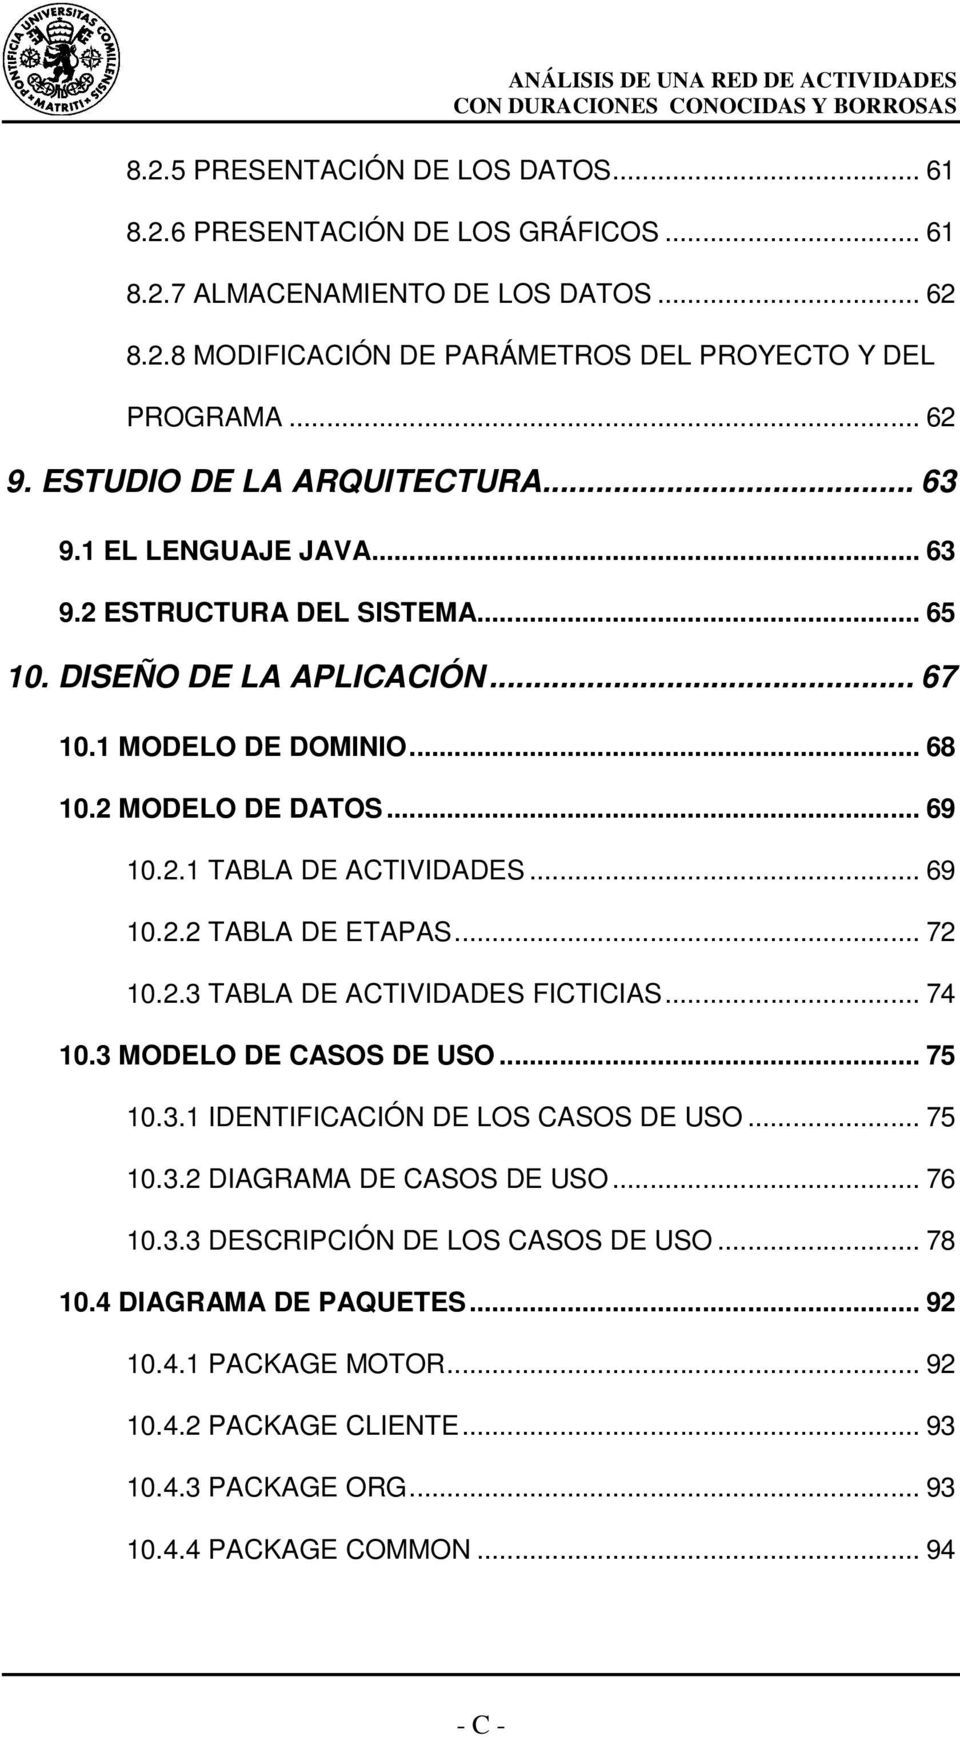 .. 69 10.2.2 TABLA DE ETAPAS... 72 10.2.3 TABLA DE ACTIVIDADES FICTICIAS... 74 10.3 MODELO DE CASOS DE USO... 75 10.3.1 IDENTIFICACIÓN DE LOS CASOS DE USO... 75 10.3.2 DIAGRAMA DE CASOS DE USO.